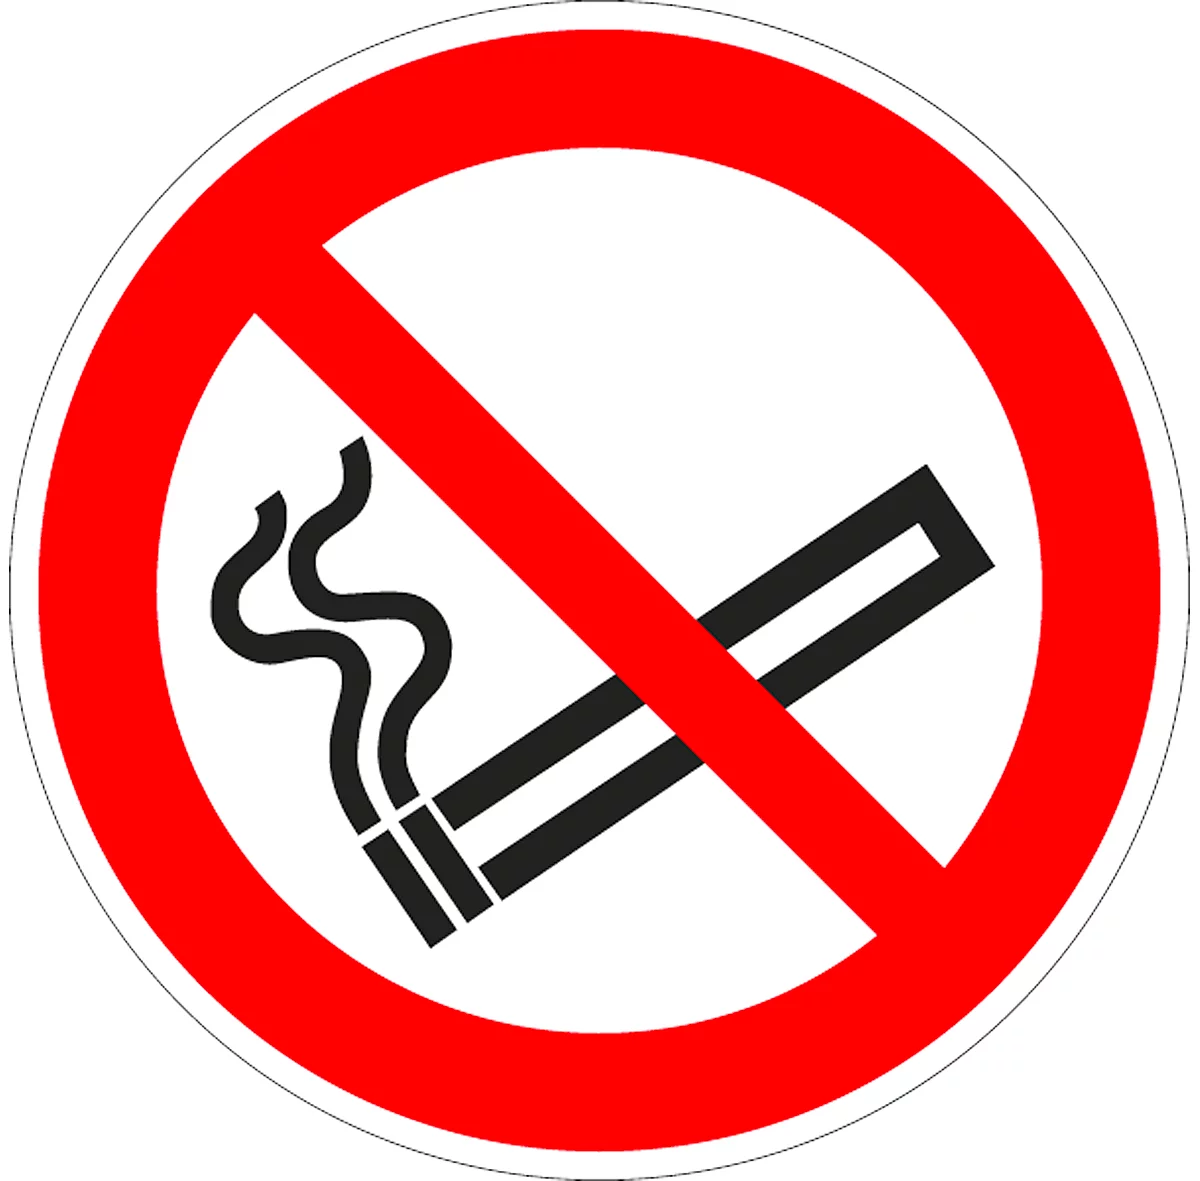 Cartel de "no fumar", ø 100 mm, 5 piezas